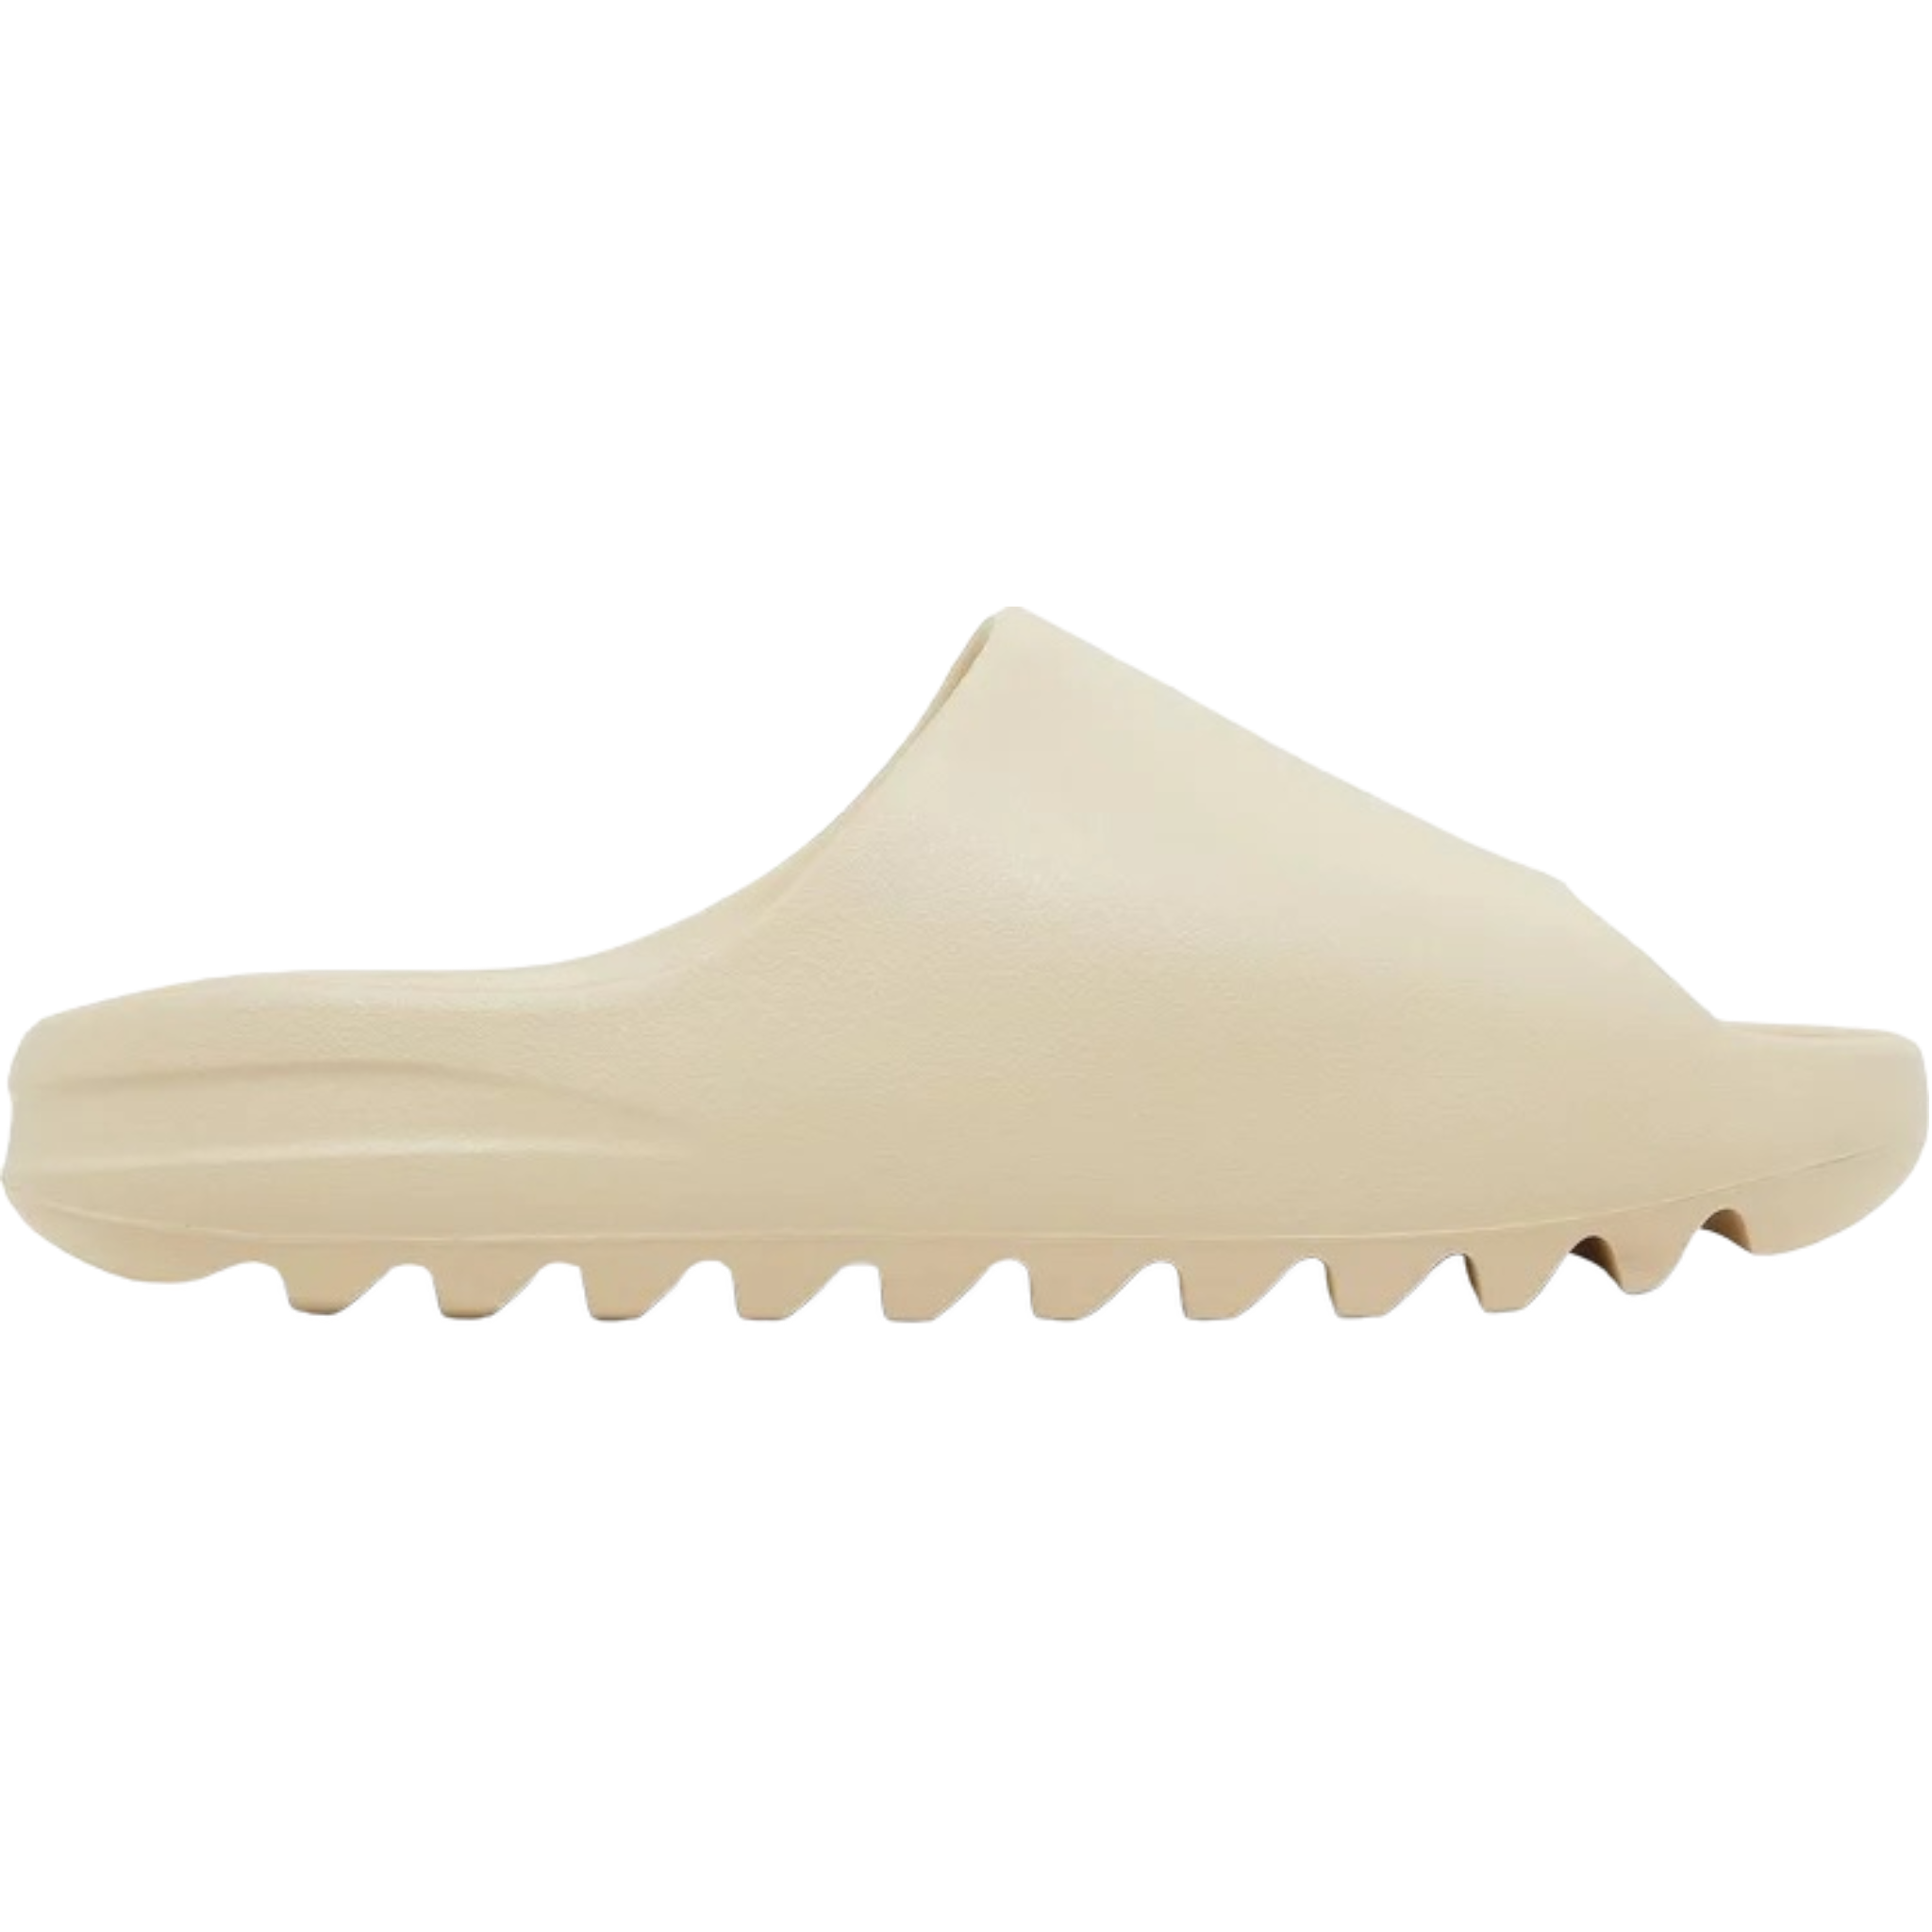 Adidas Yeezy Slide 'Bone'